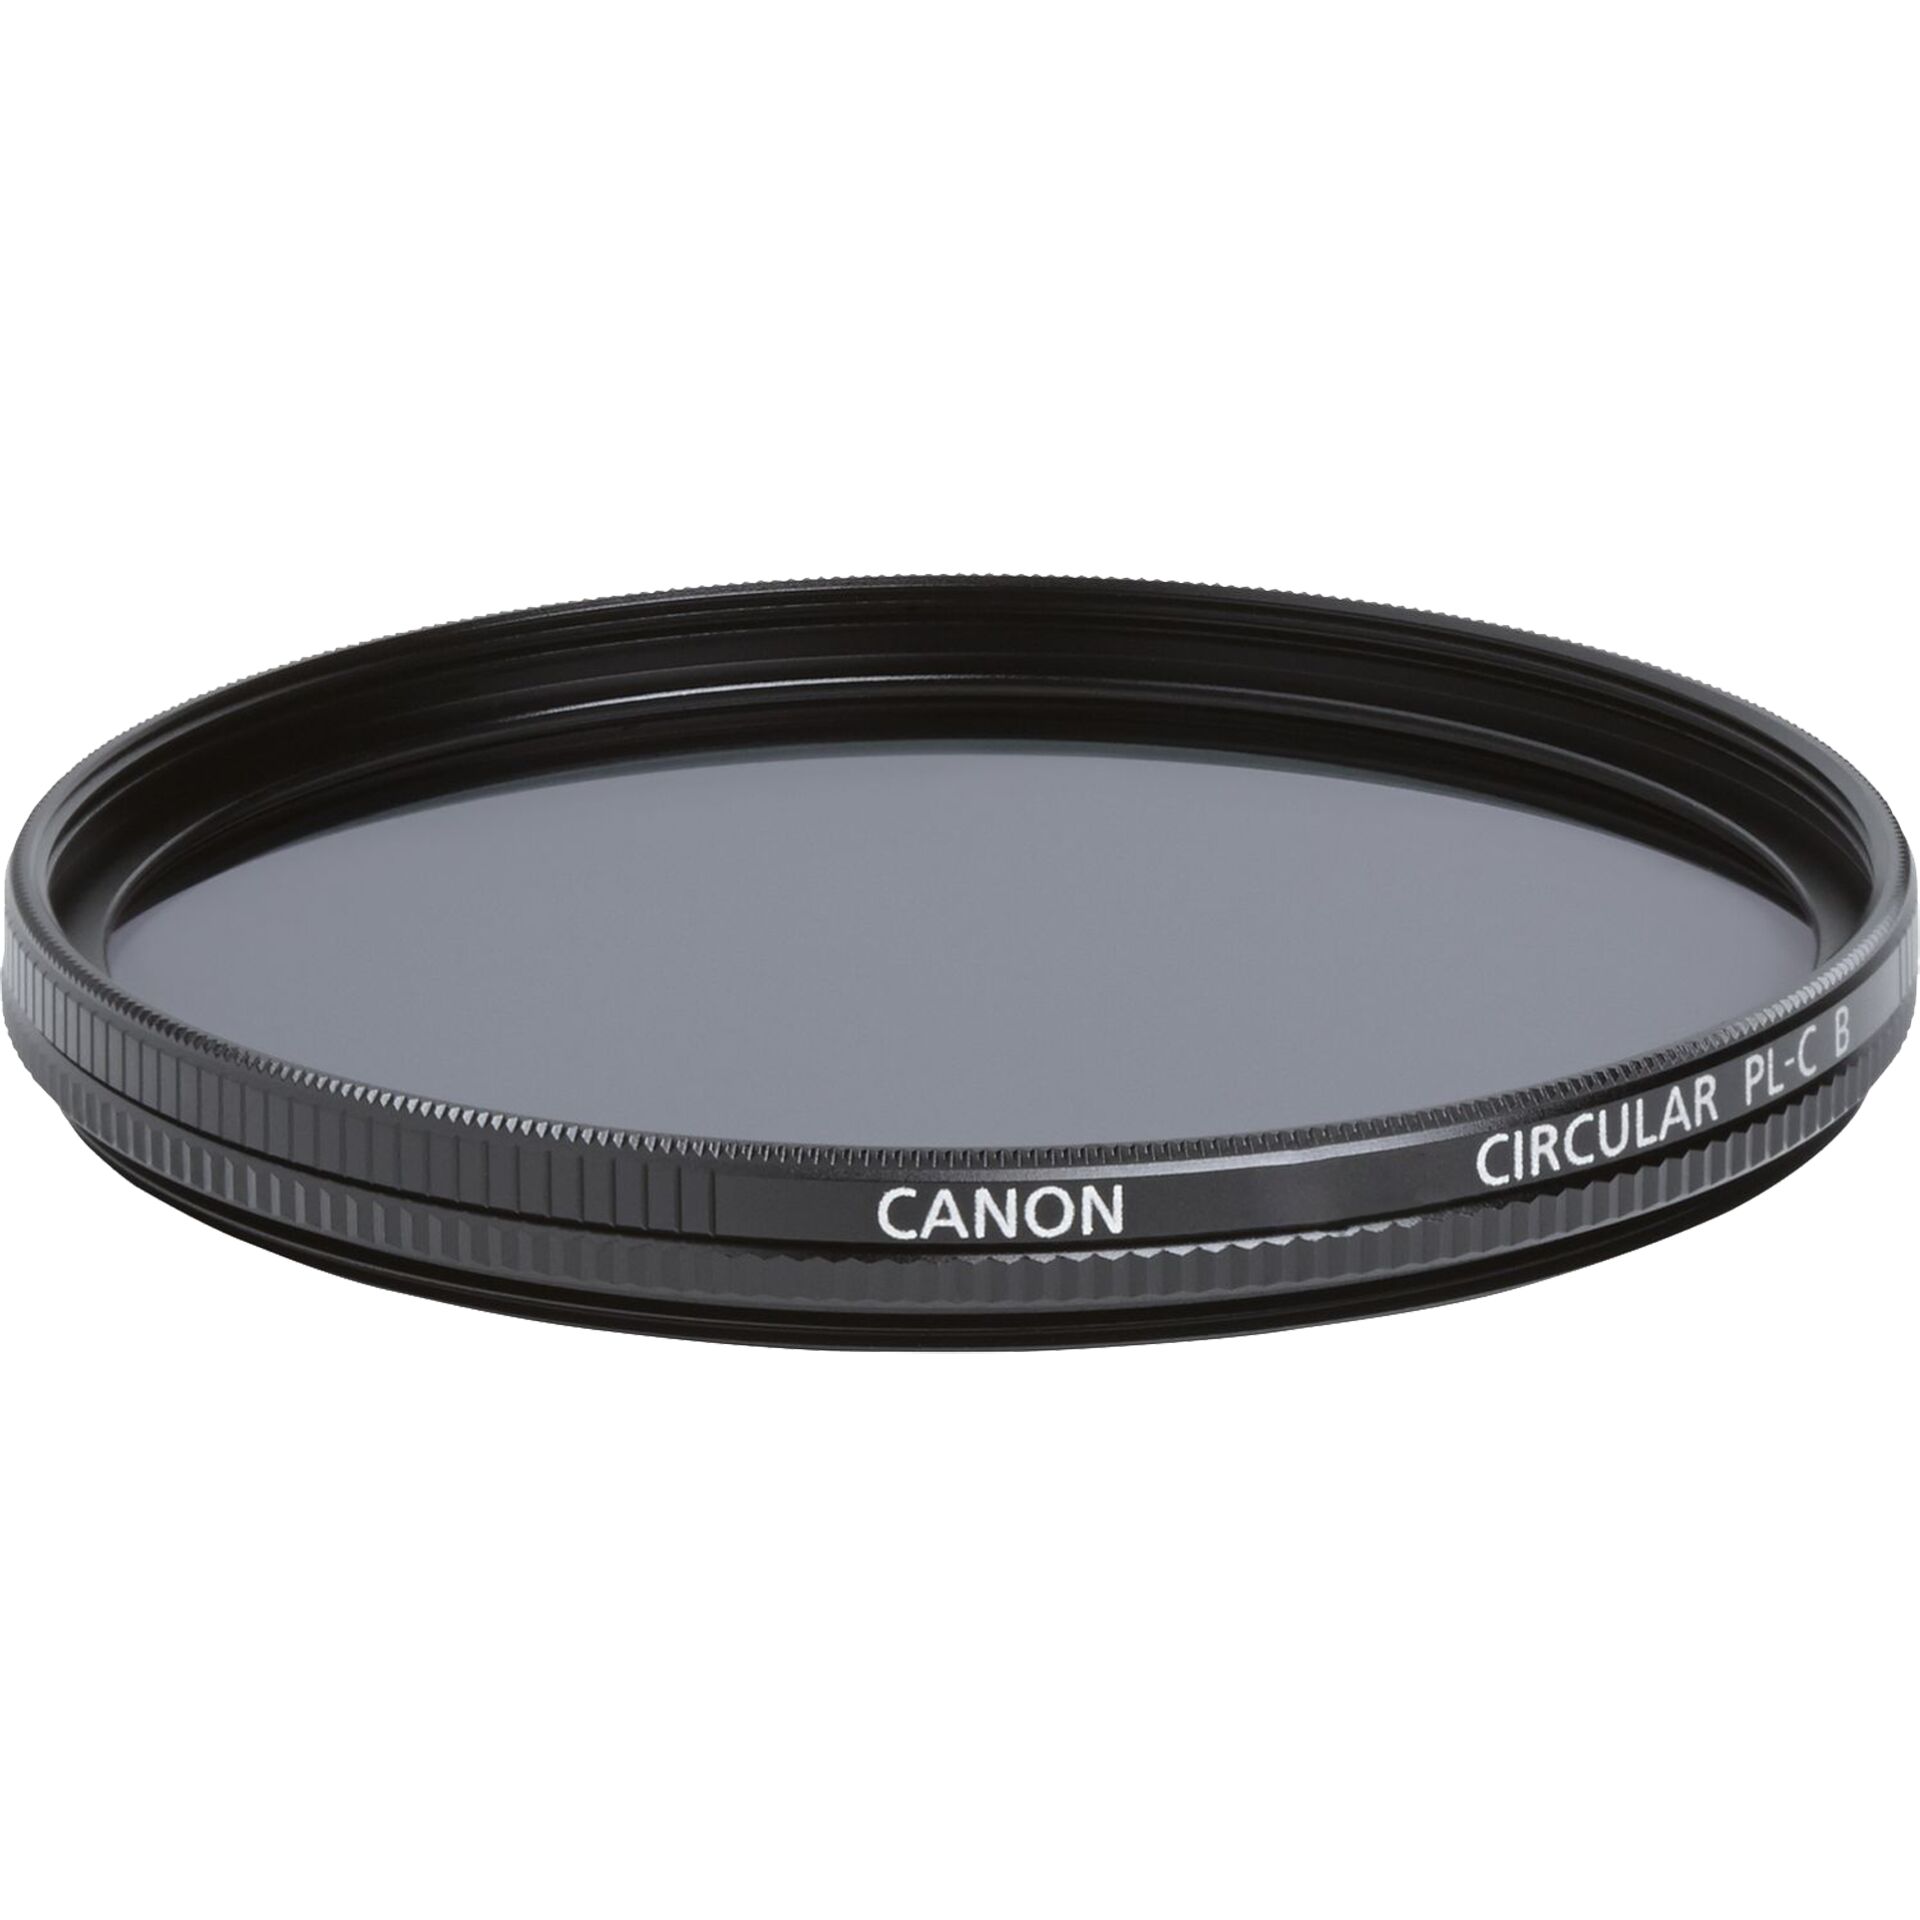 Canon PL-C B filtri 77